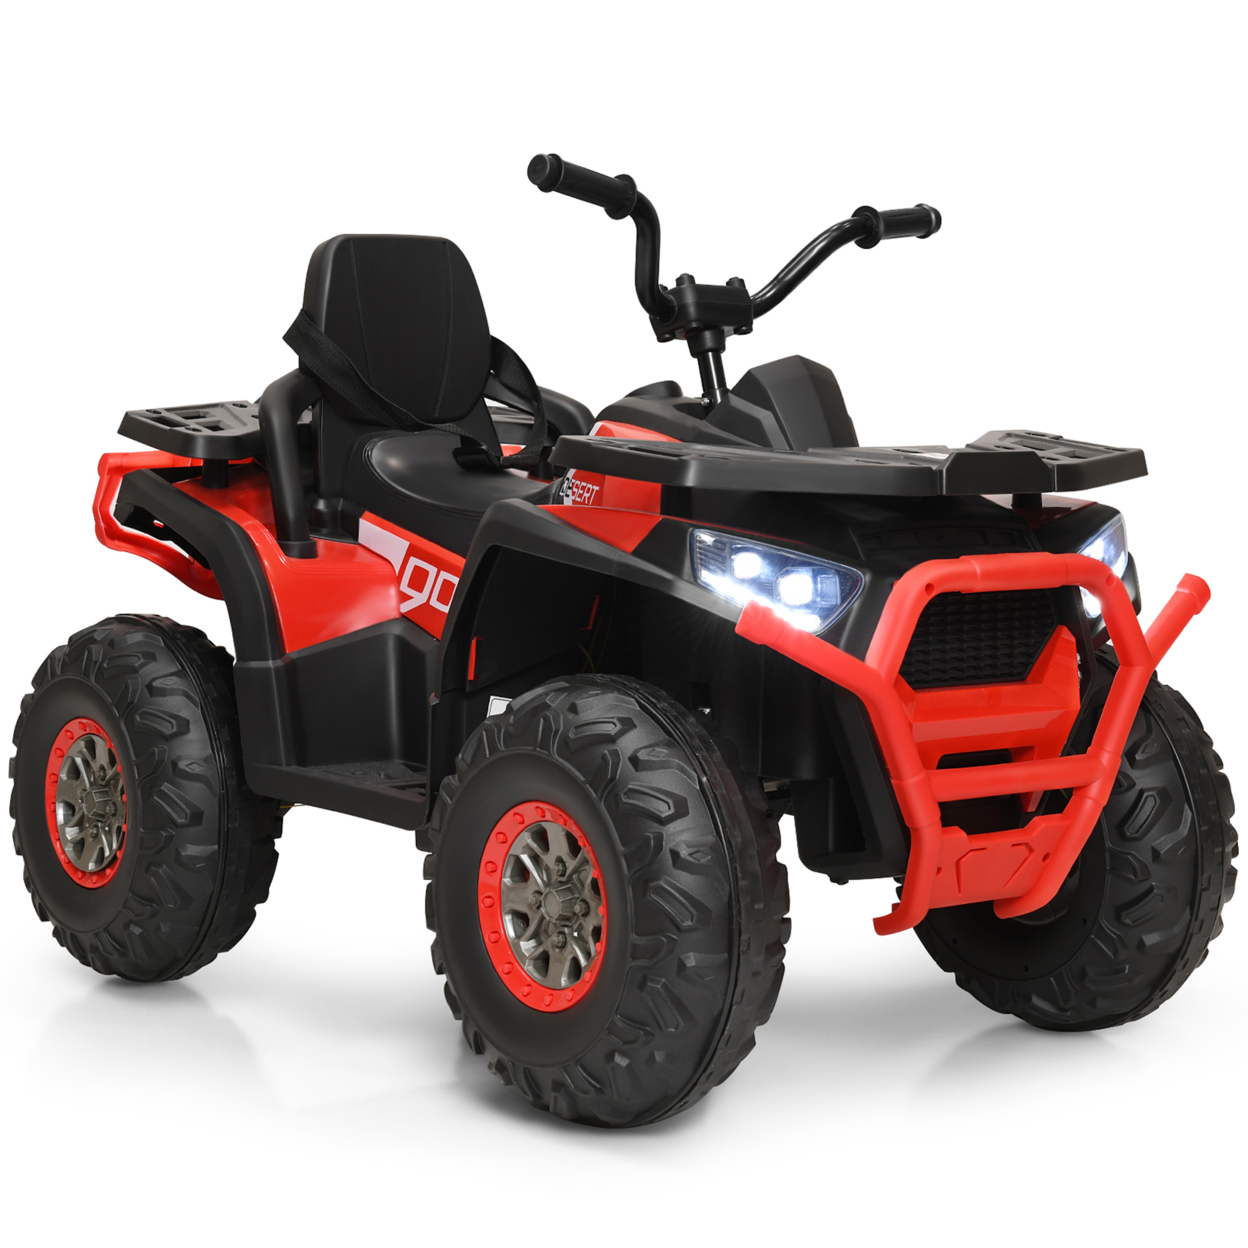 12V Electric Kids Ride On Car ATV 4-Wheeler Quad W/ LED Light Black/Red/White - Red